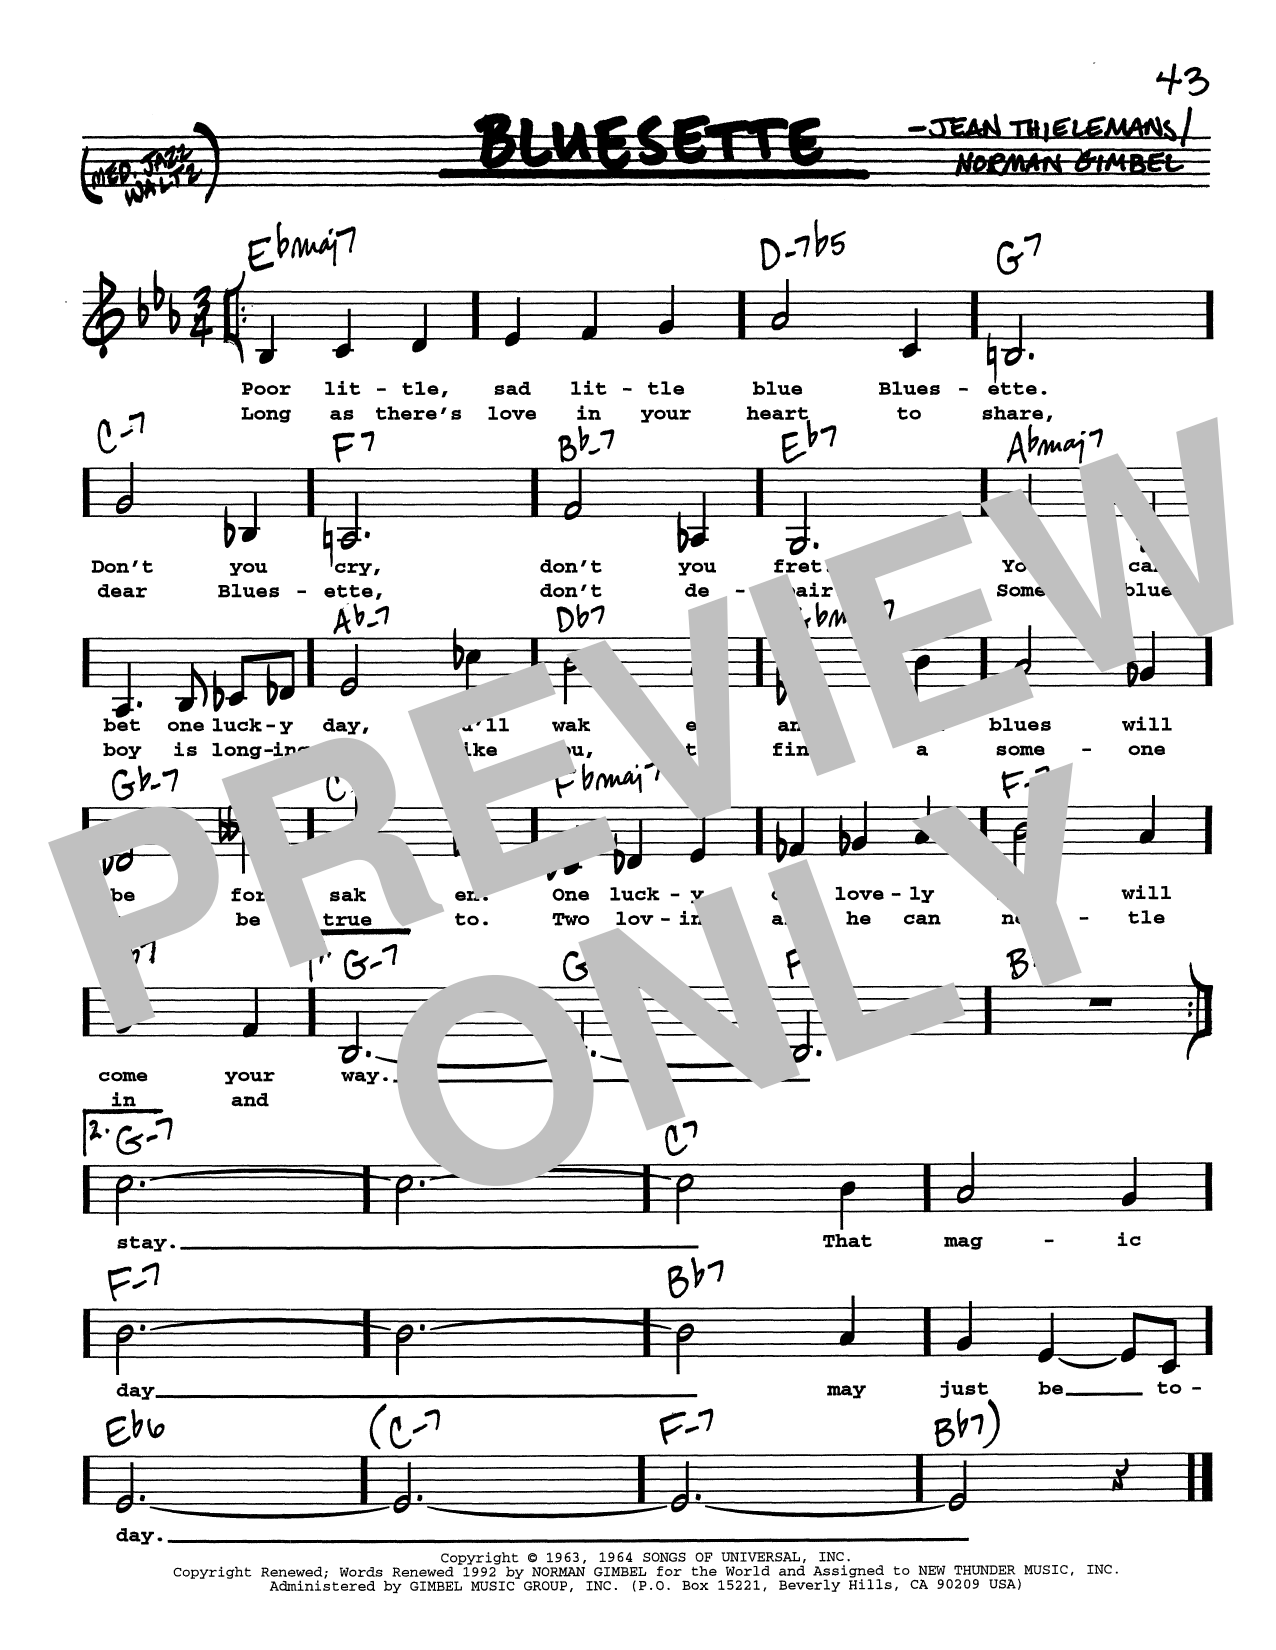 Toots Thielemans Bluesette (Low Voice) sheet music notes printable PDF score